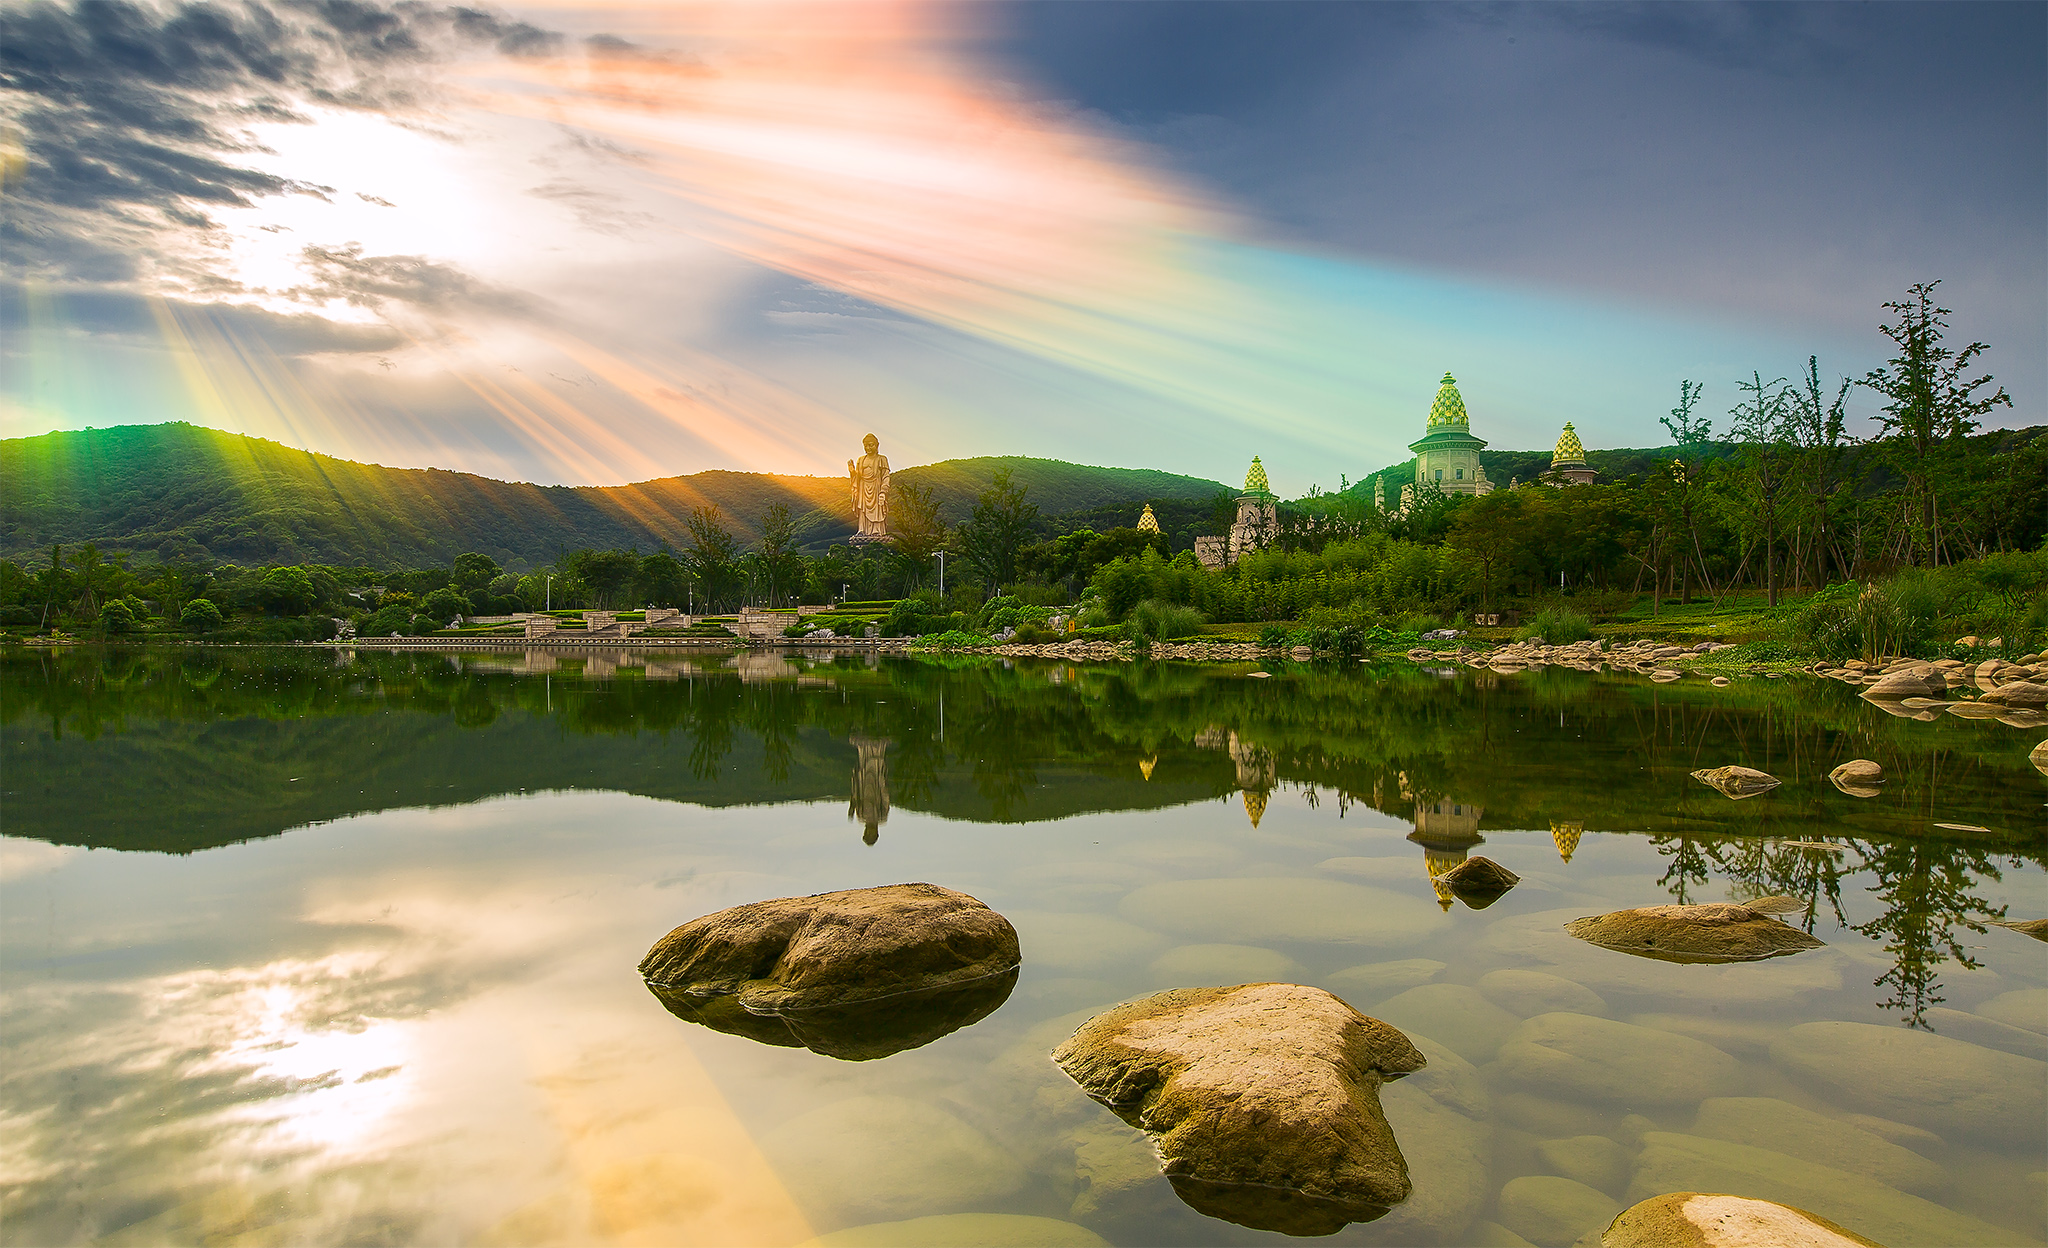 中国40个最美景点之灵山梵宫,它真的很美